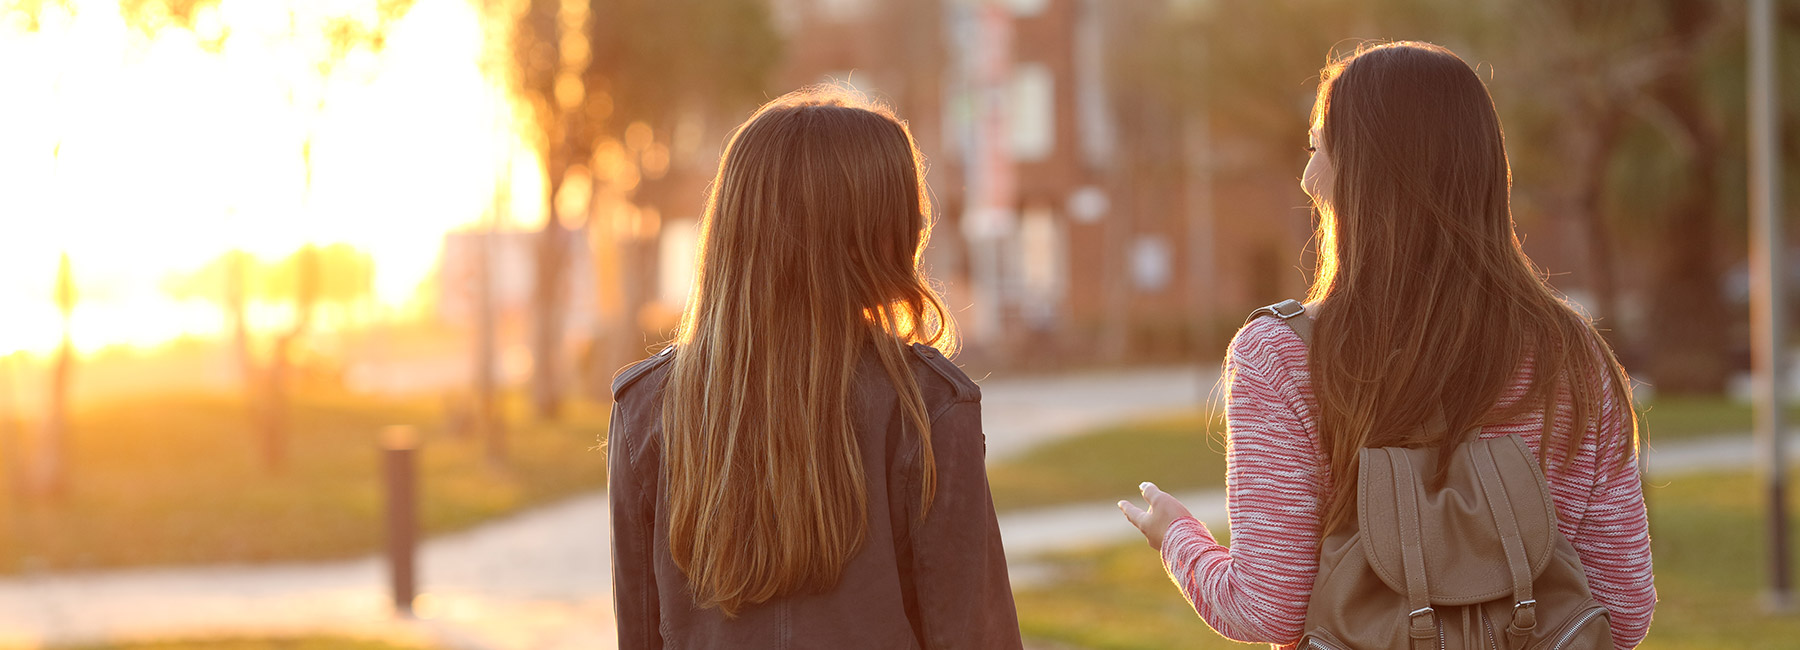 Deux jeunes filles parlent dans un parc